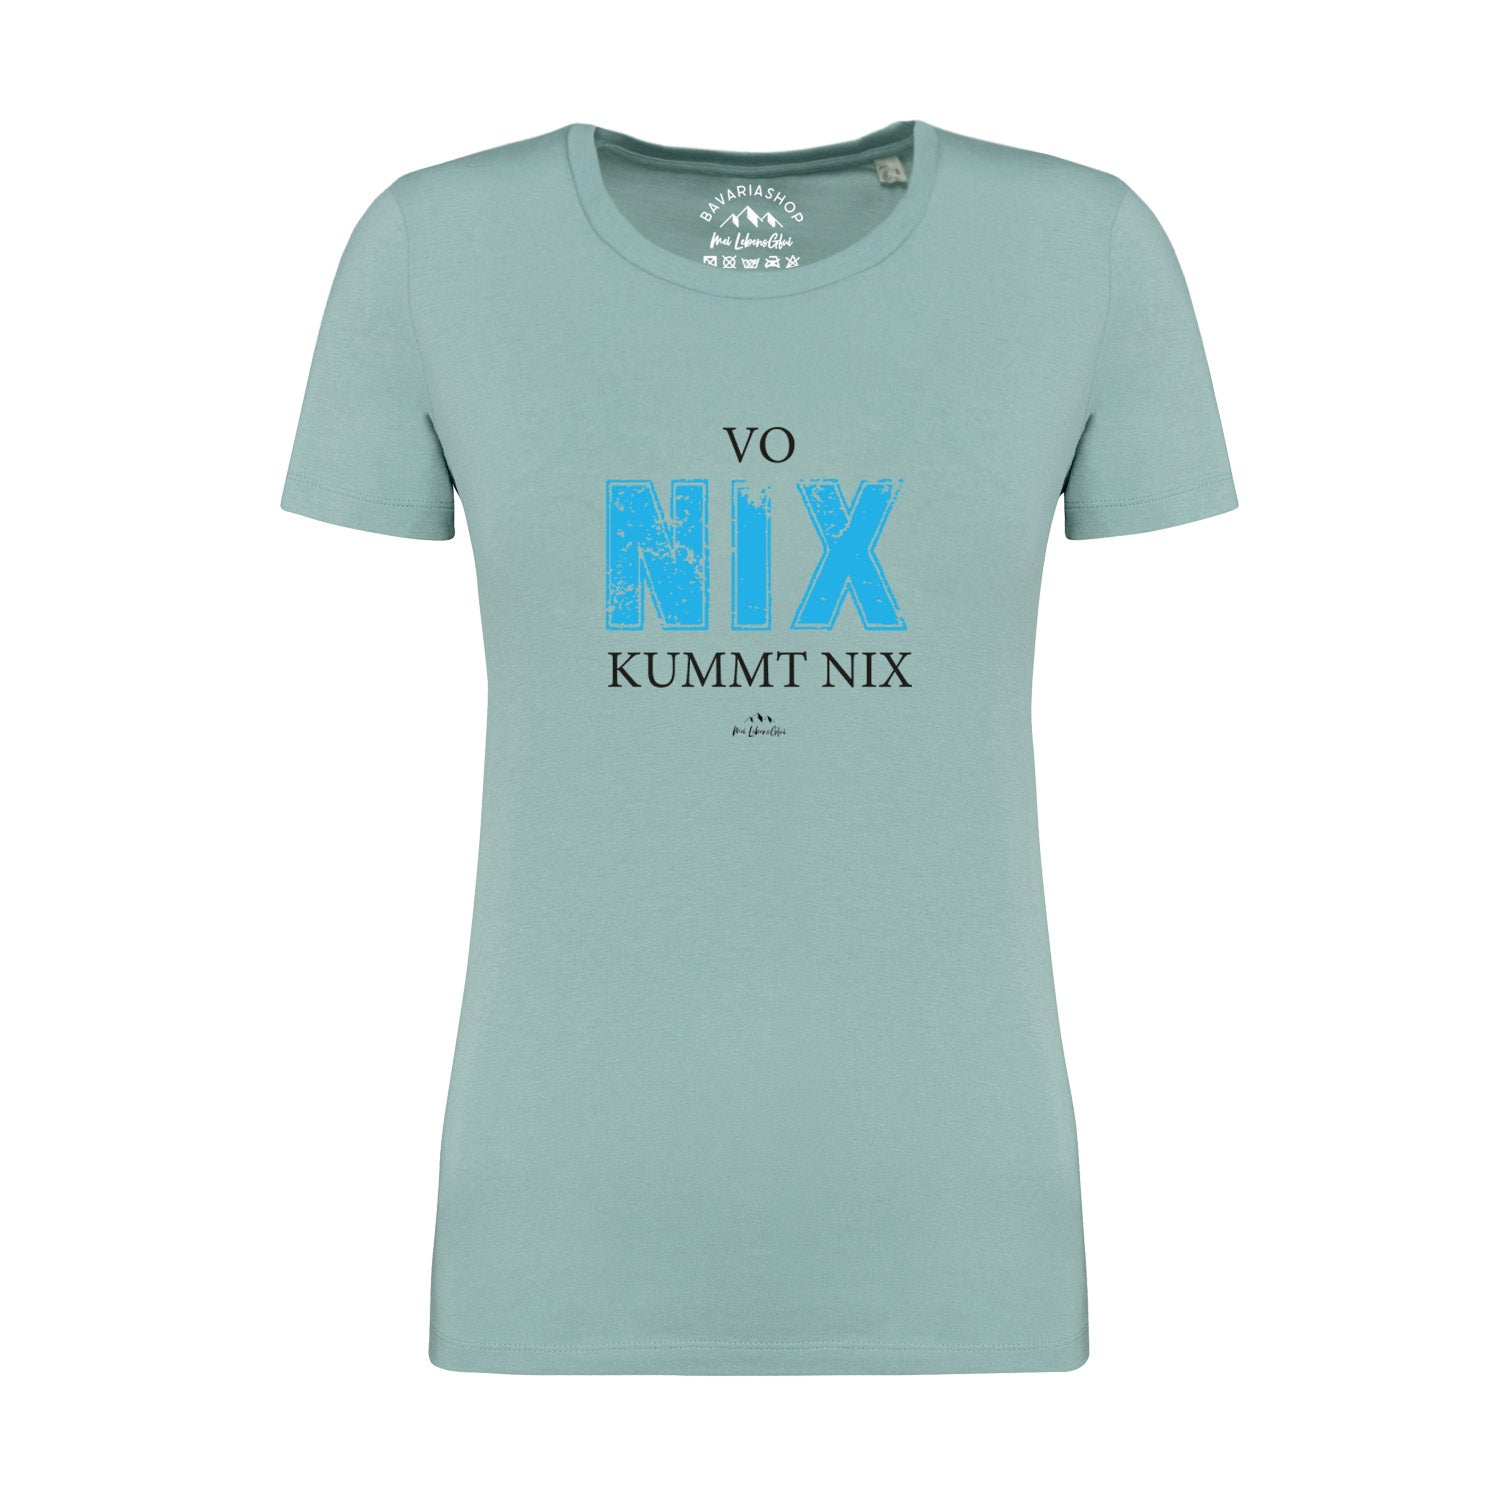 Damen T-Shirt "Vo nix kummt nix"